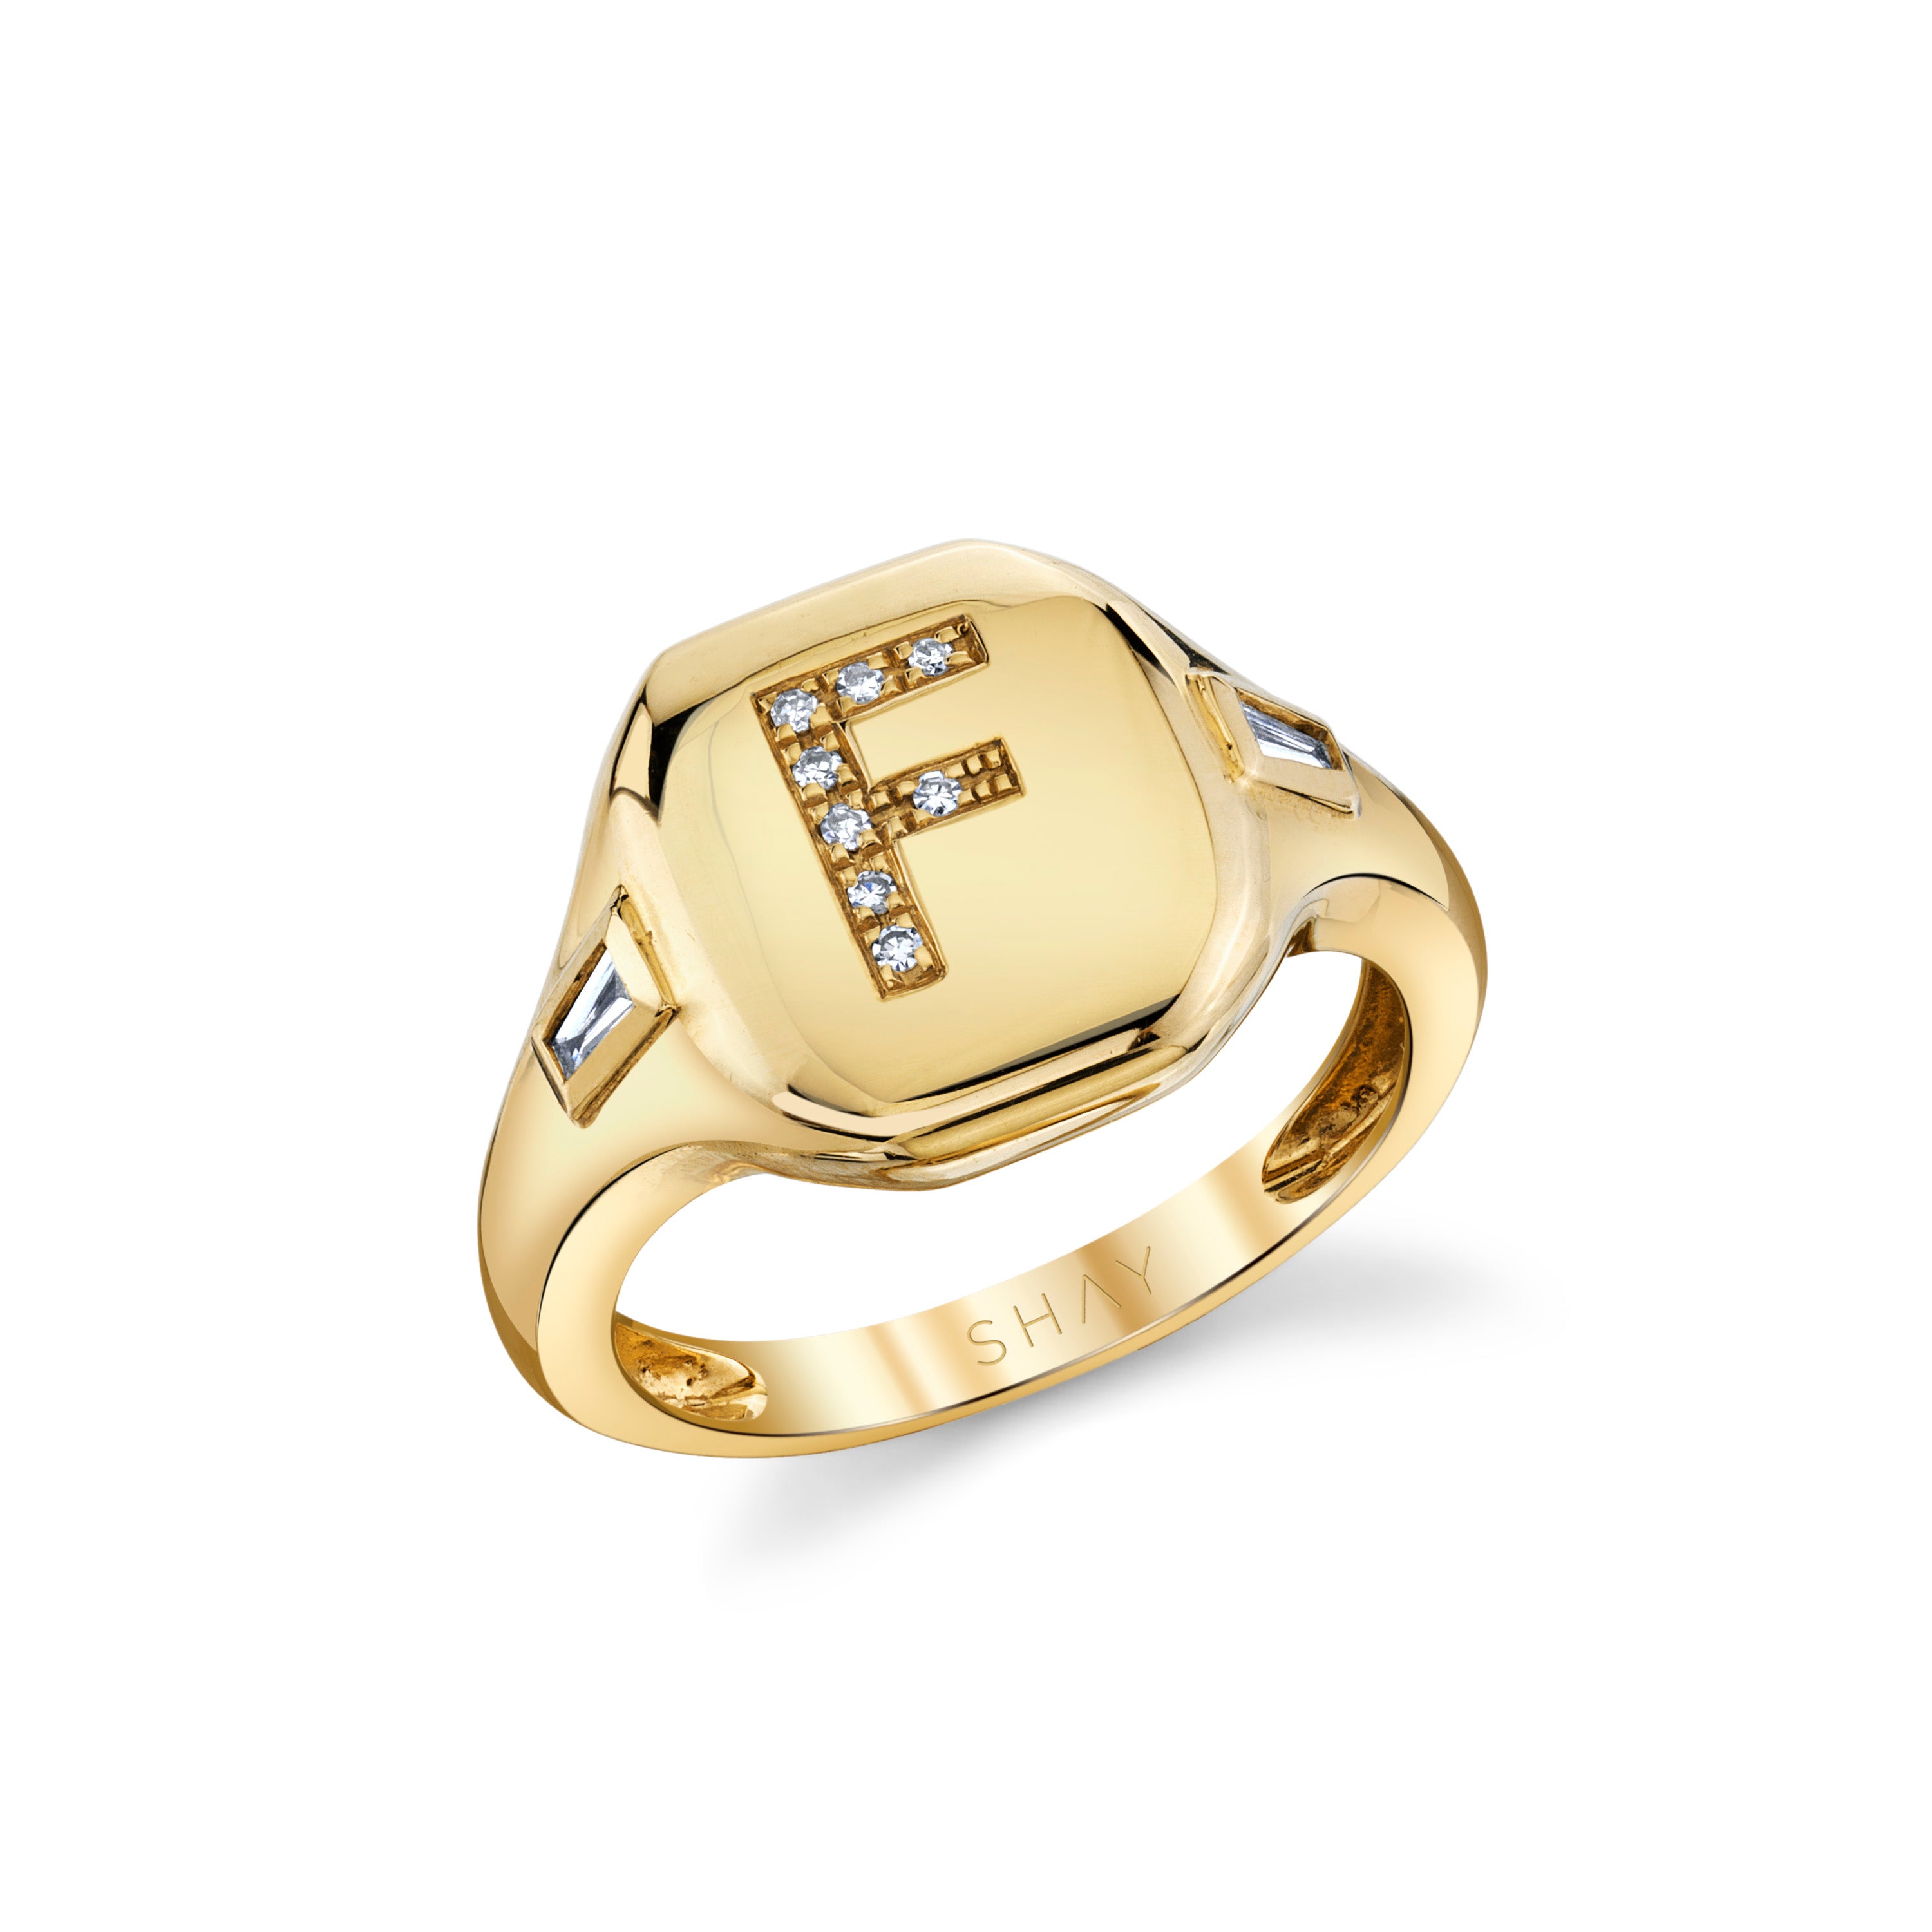 Buy Multifaceted Diamond Finger Ring Online | ORRA